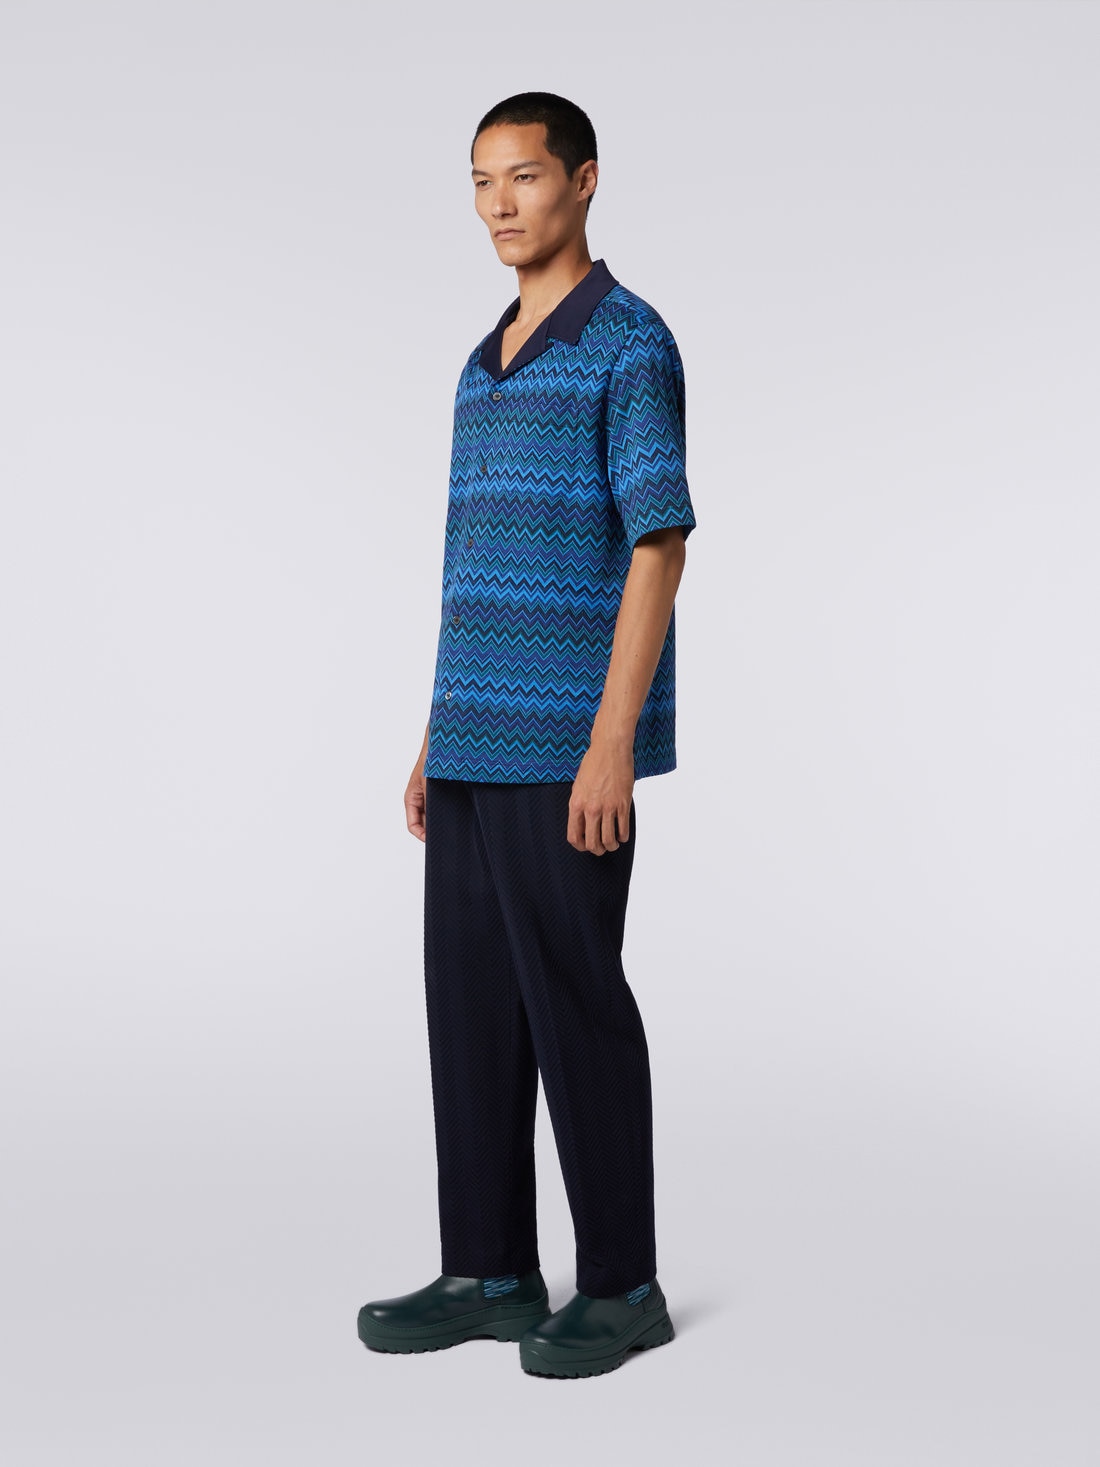 Short-sleeved jacquard knit cotton jersey shirt, Blue - US23WJ0BBJ00BFSM8Z5 - 2